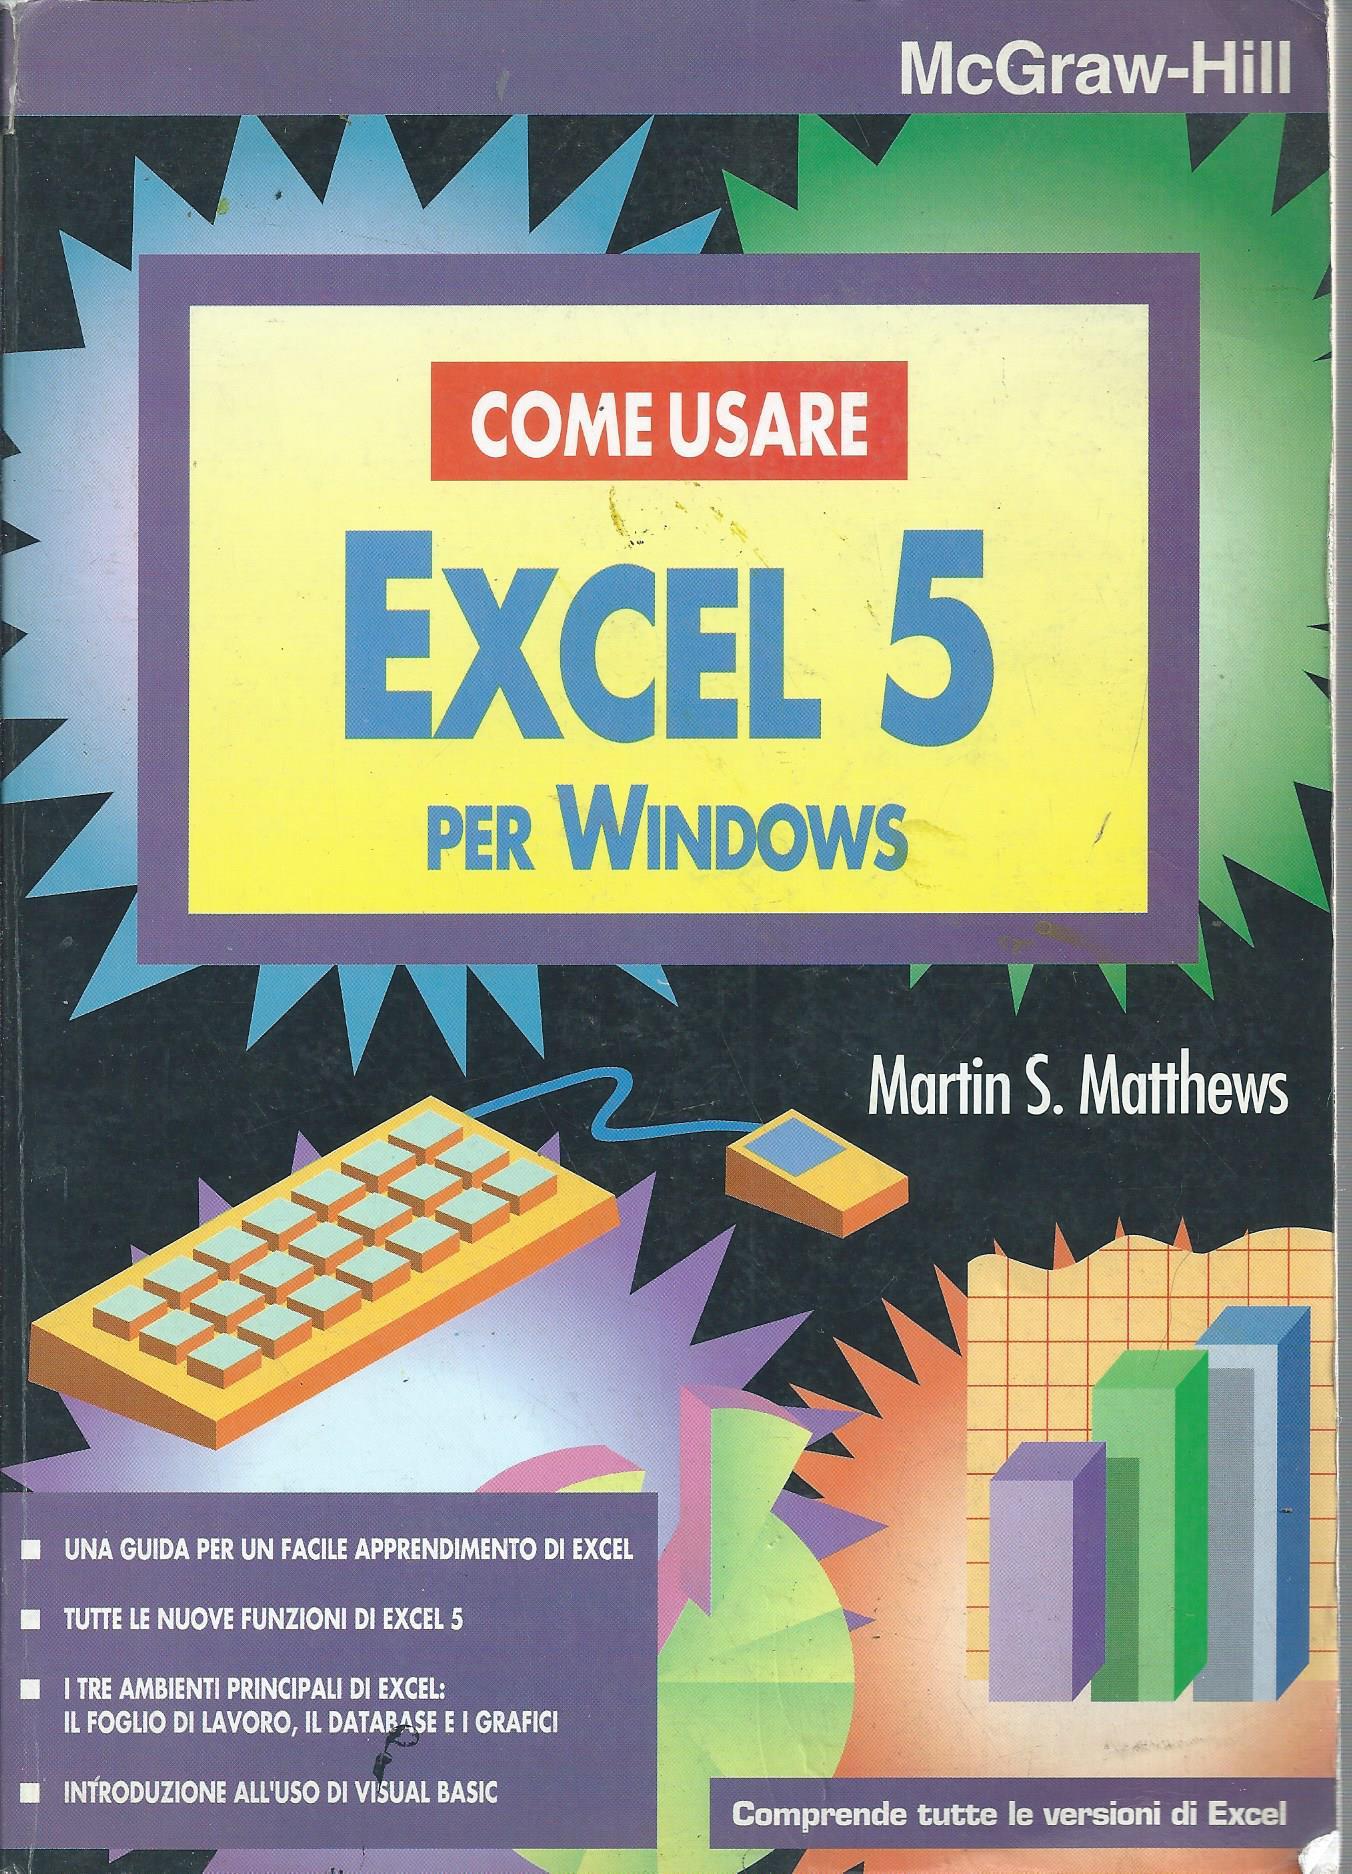 Come usare Excel 5 per Windows